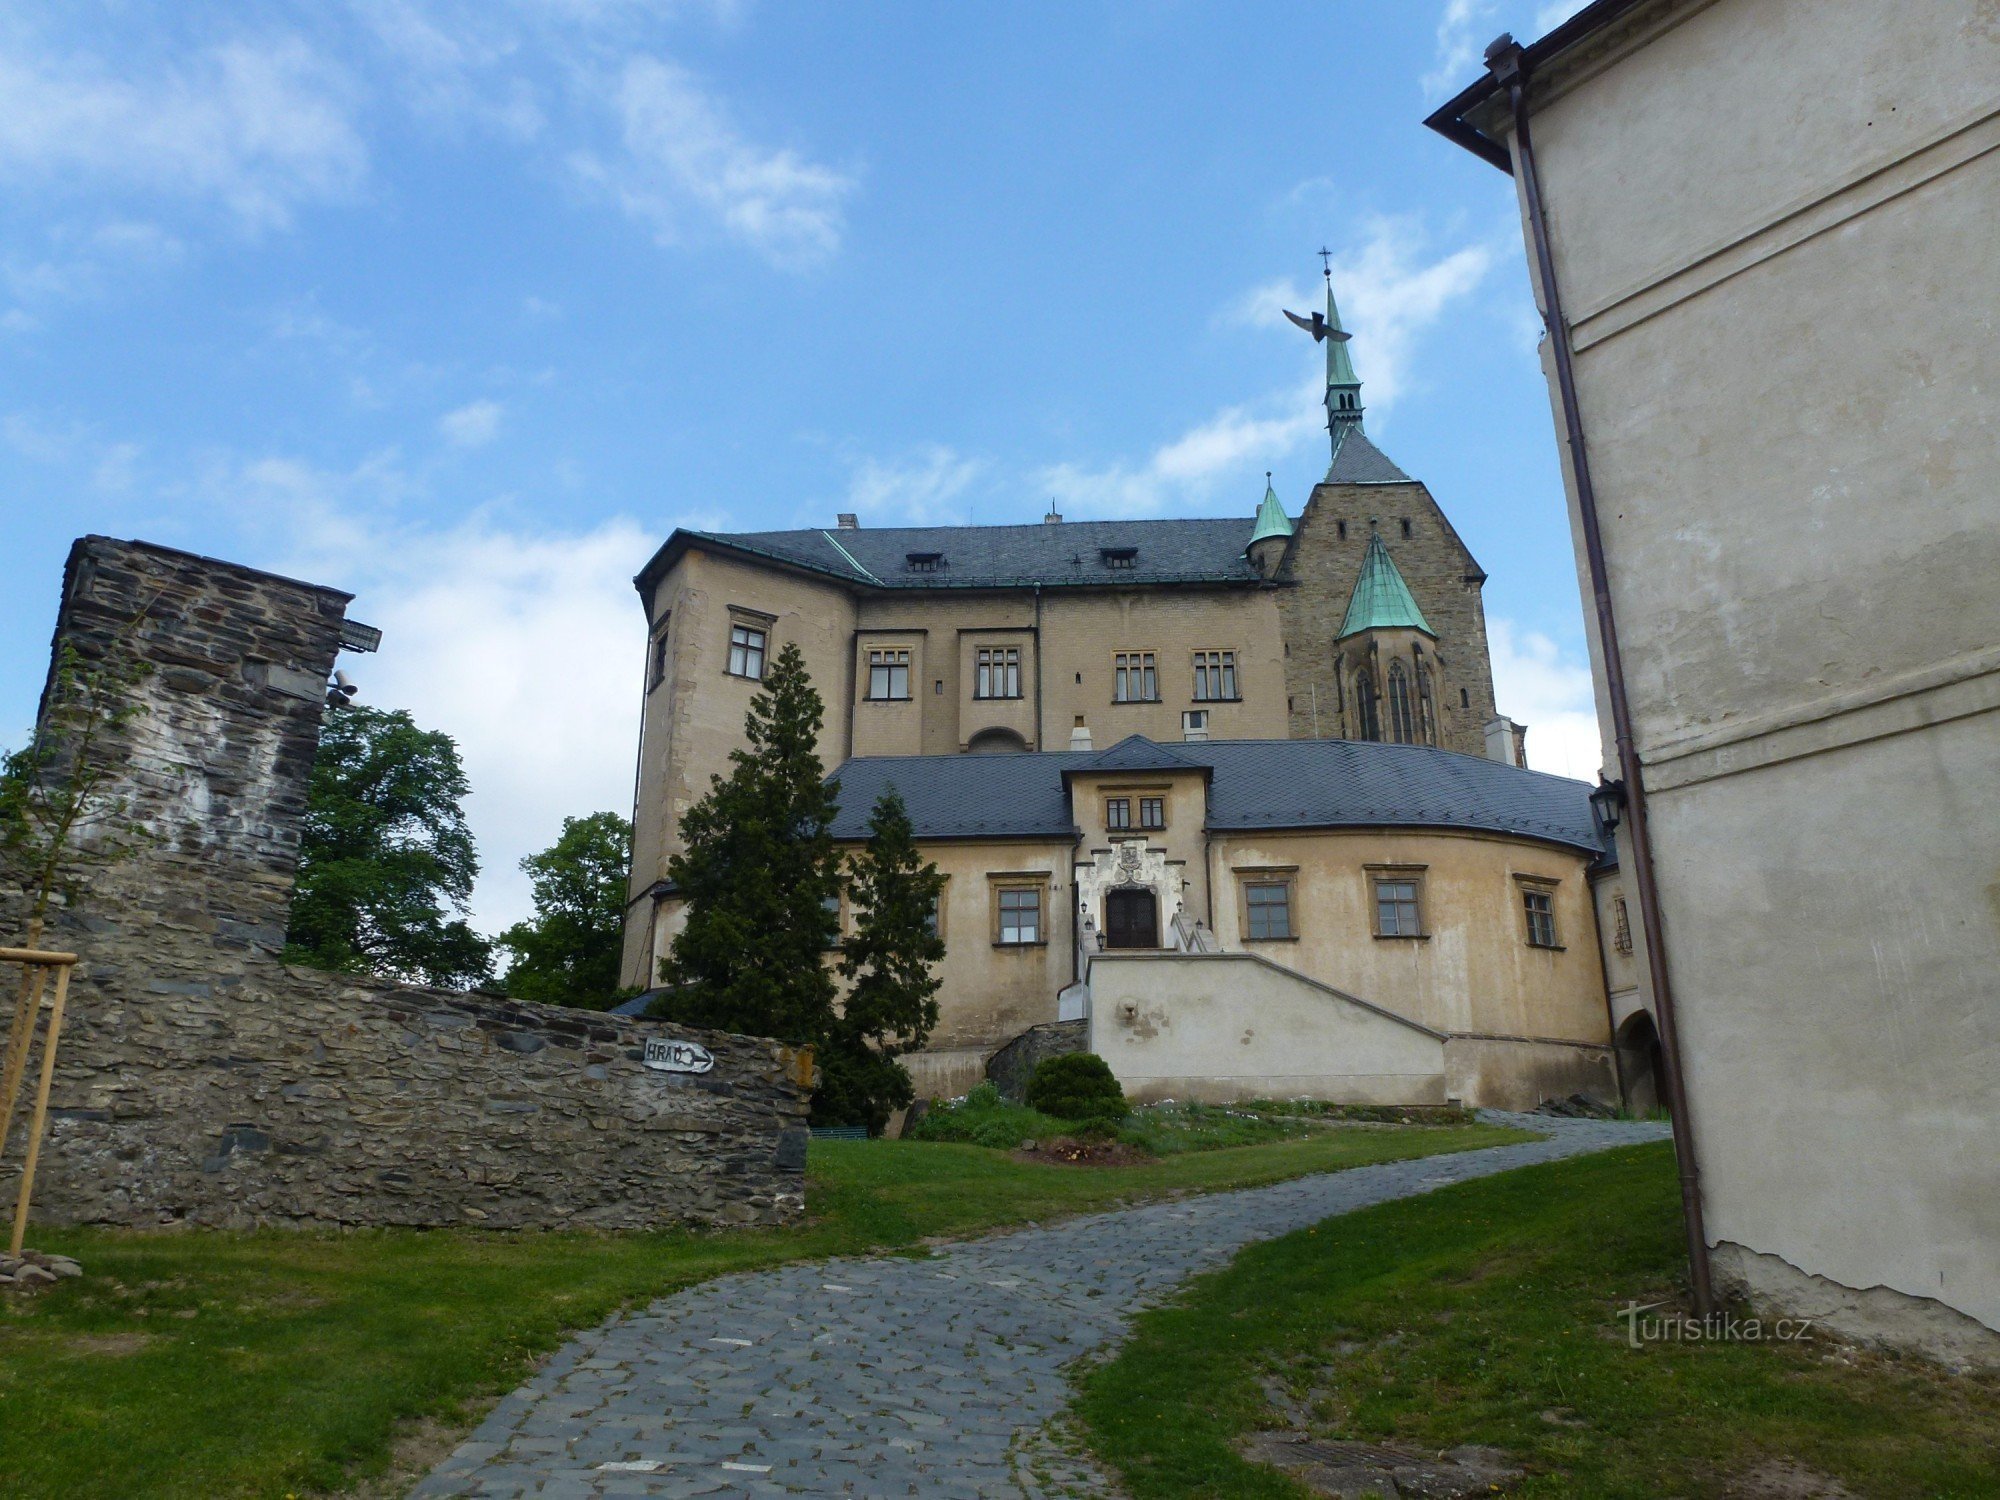 Château de Šternberk